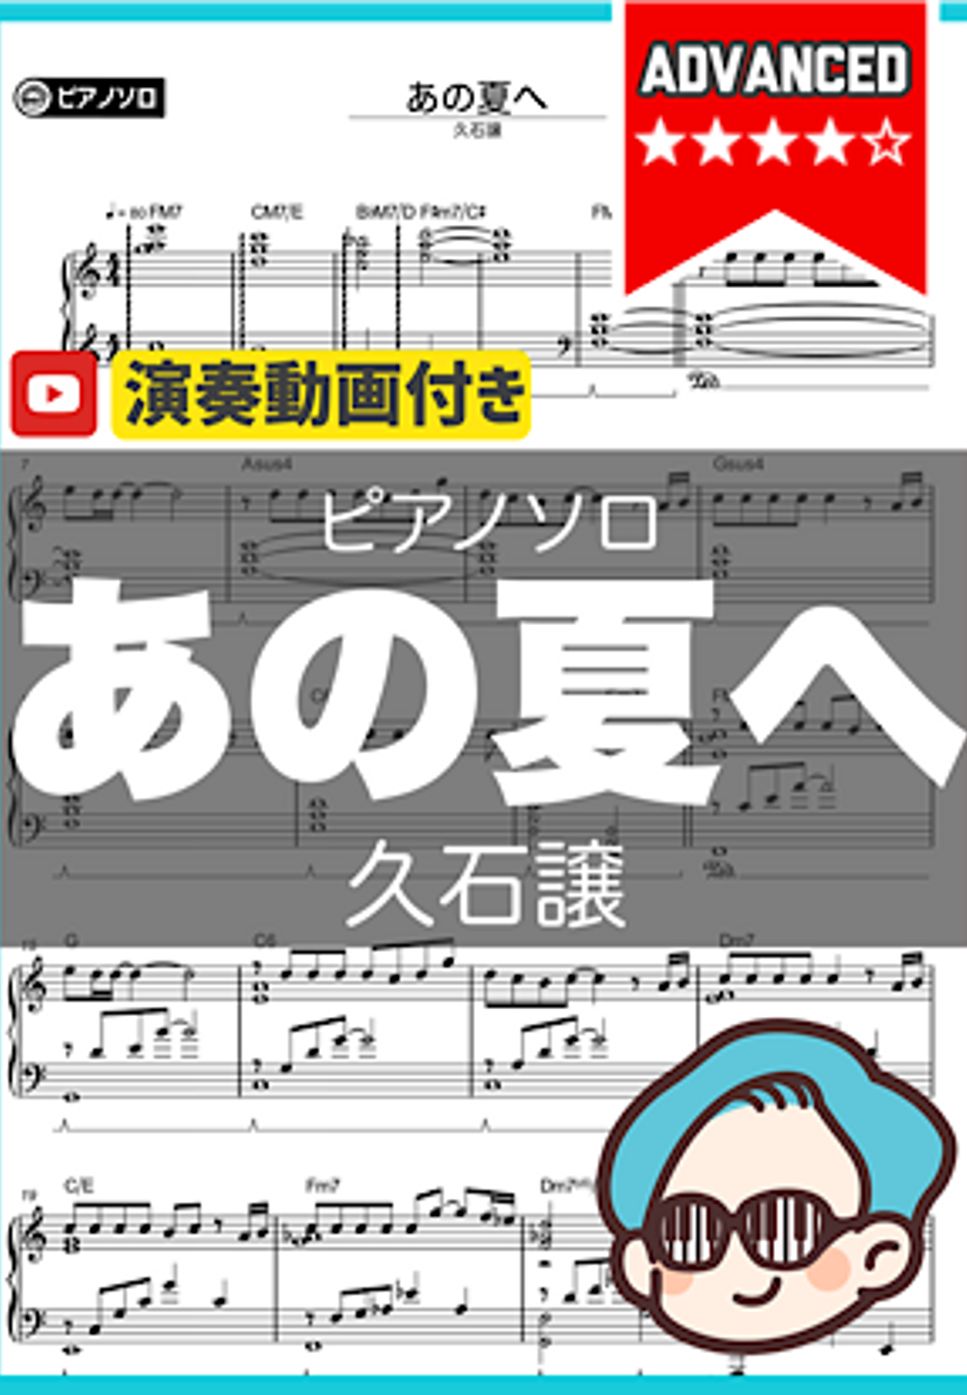 久石譲 - あの夏へ by シータピアノ